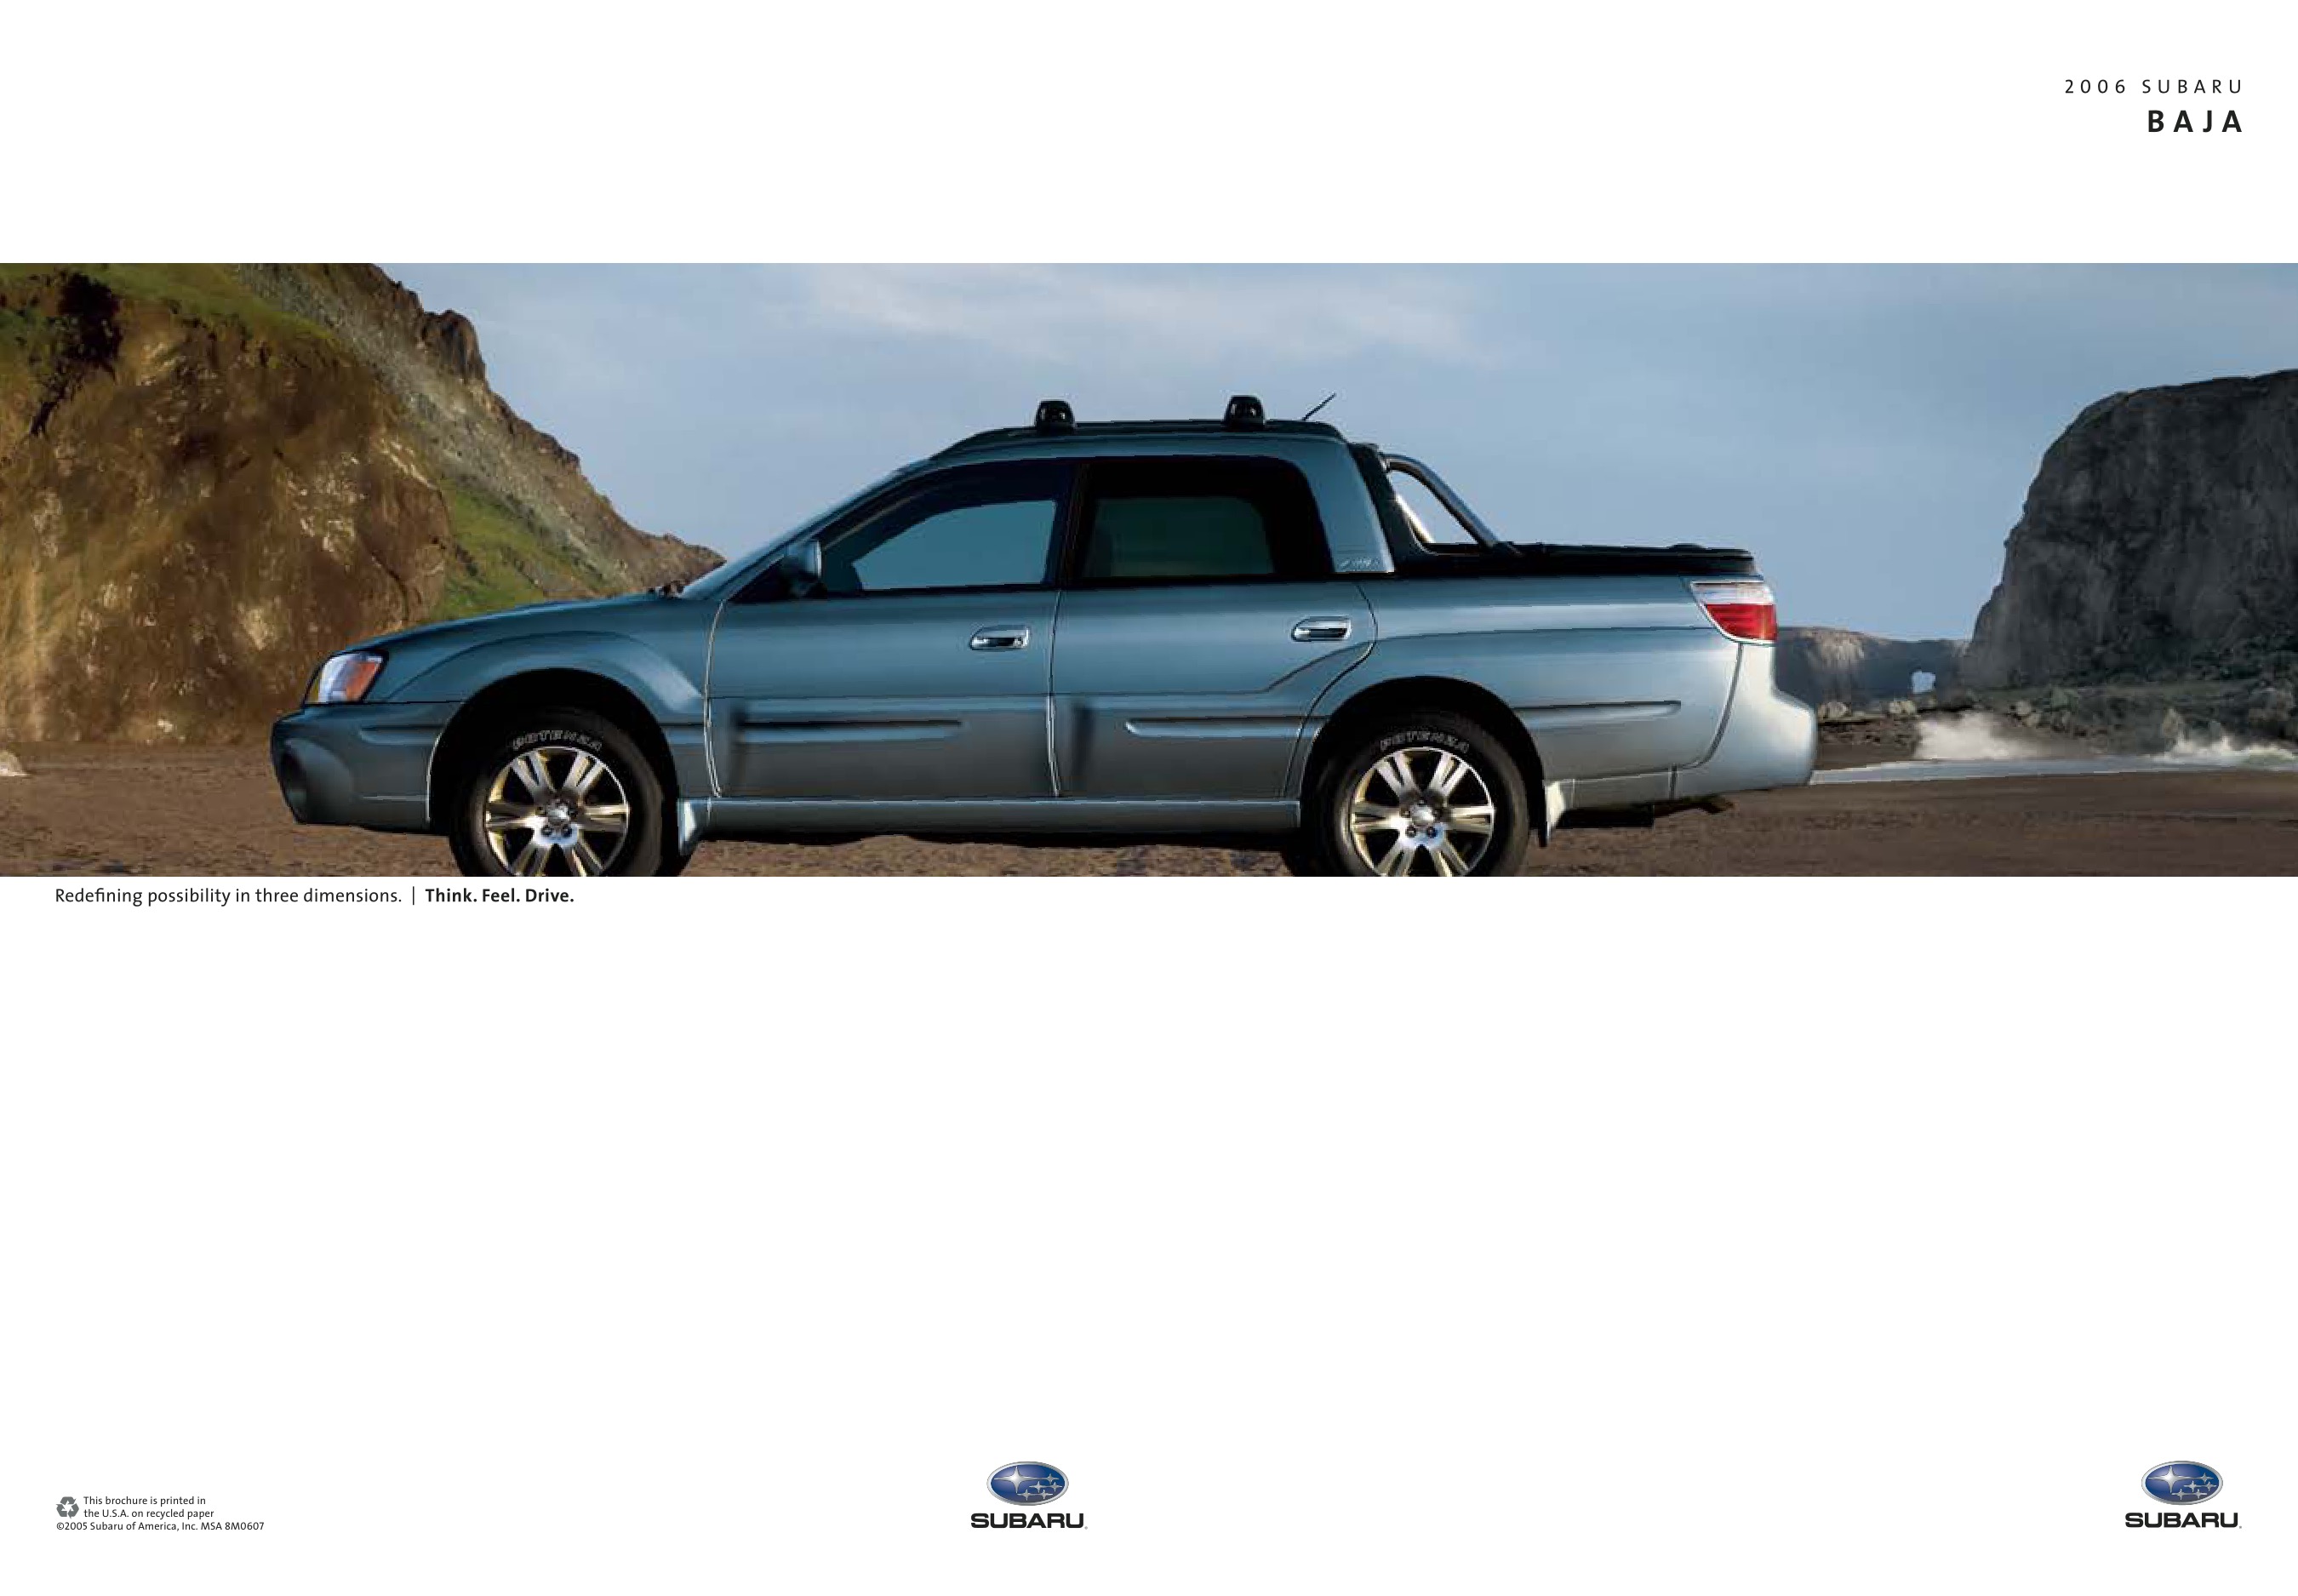 2006 Subaru Baja Brochure